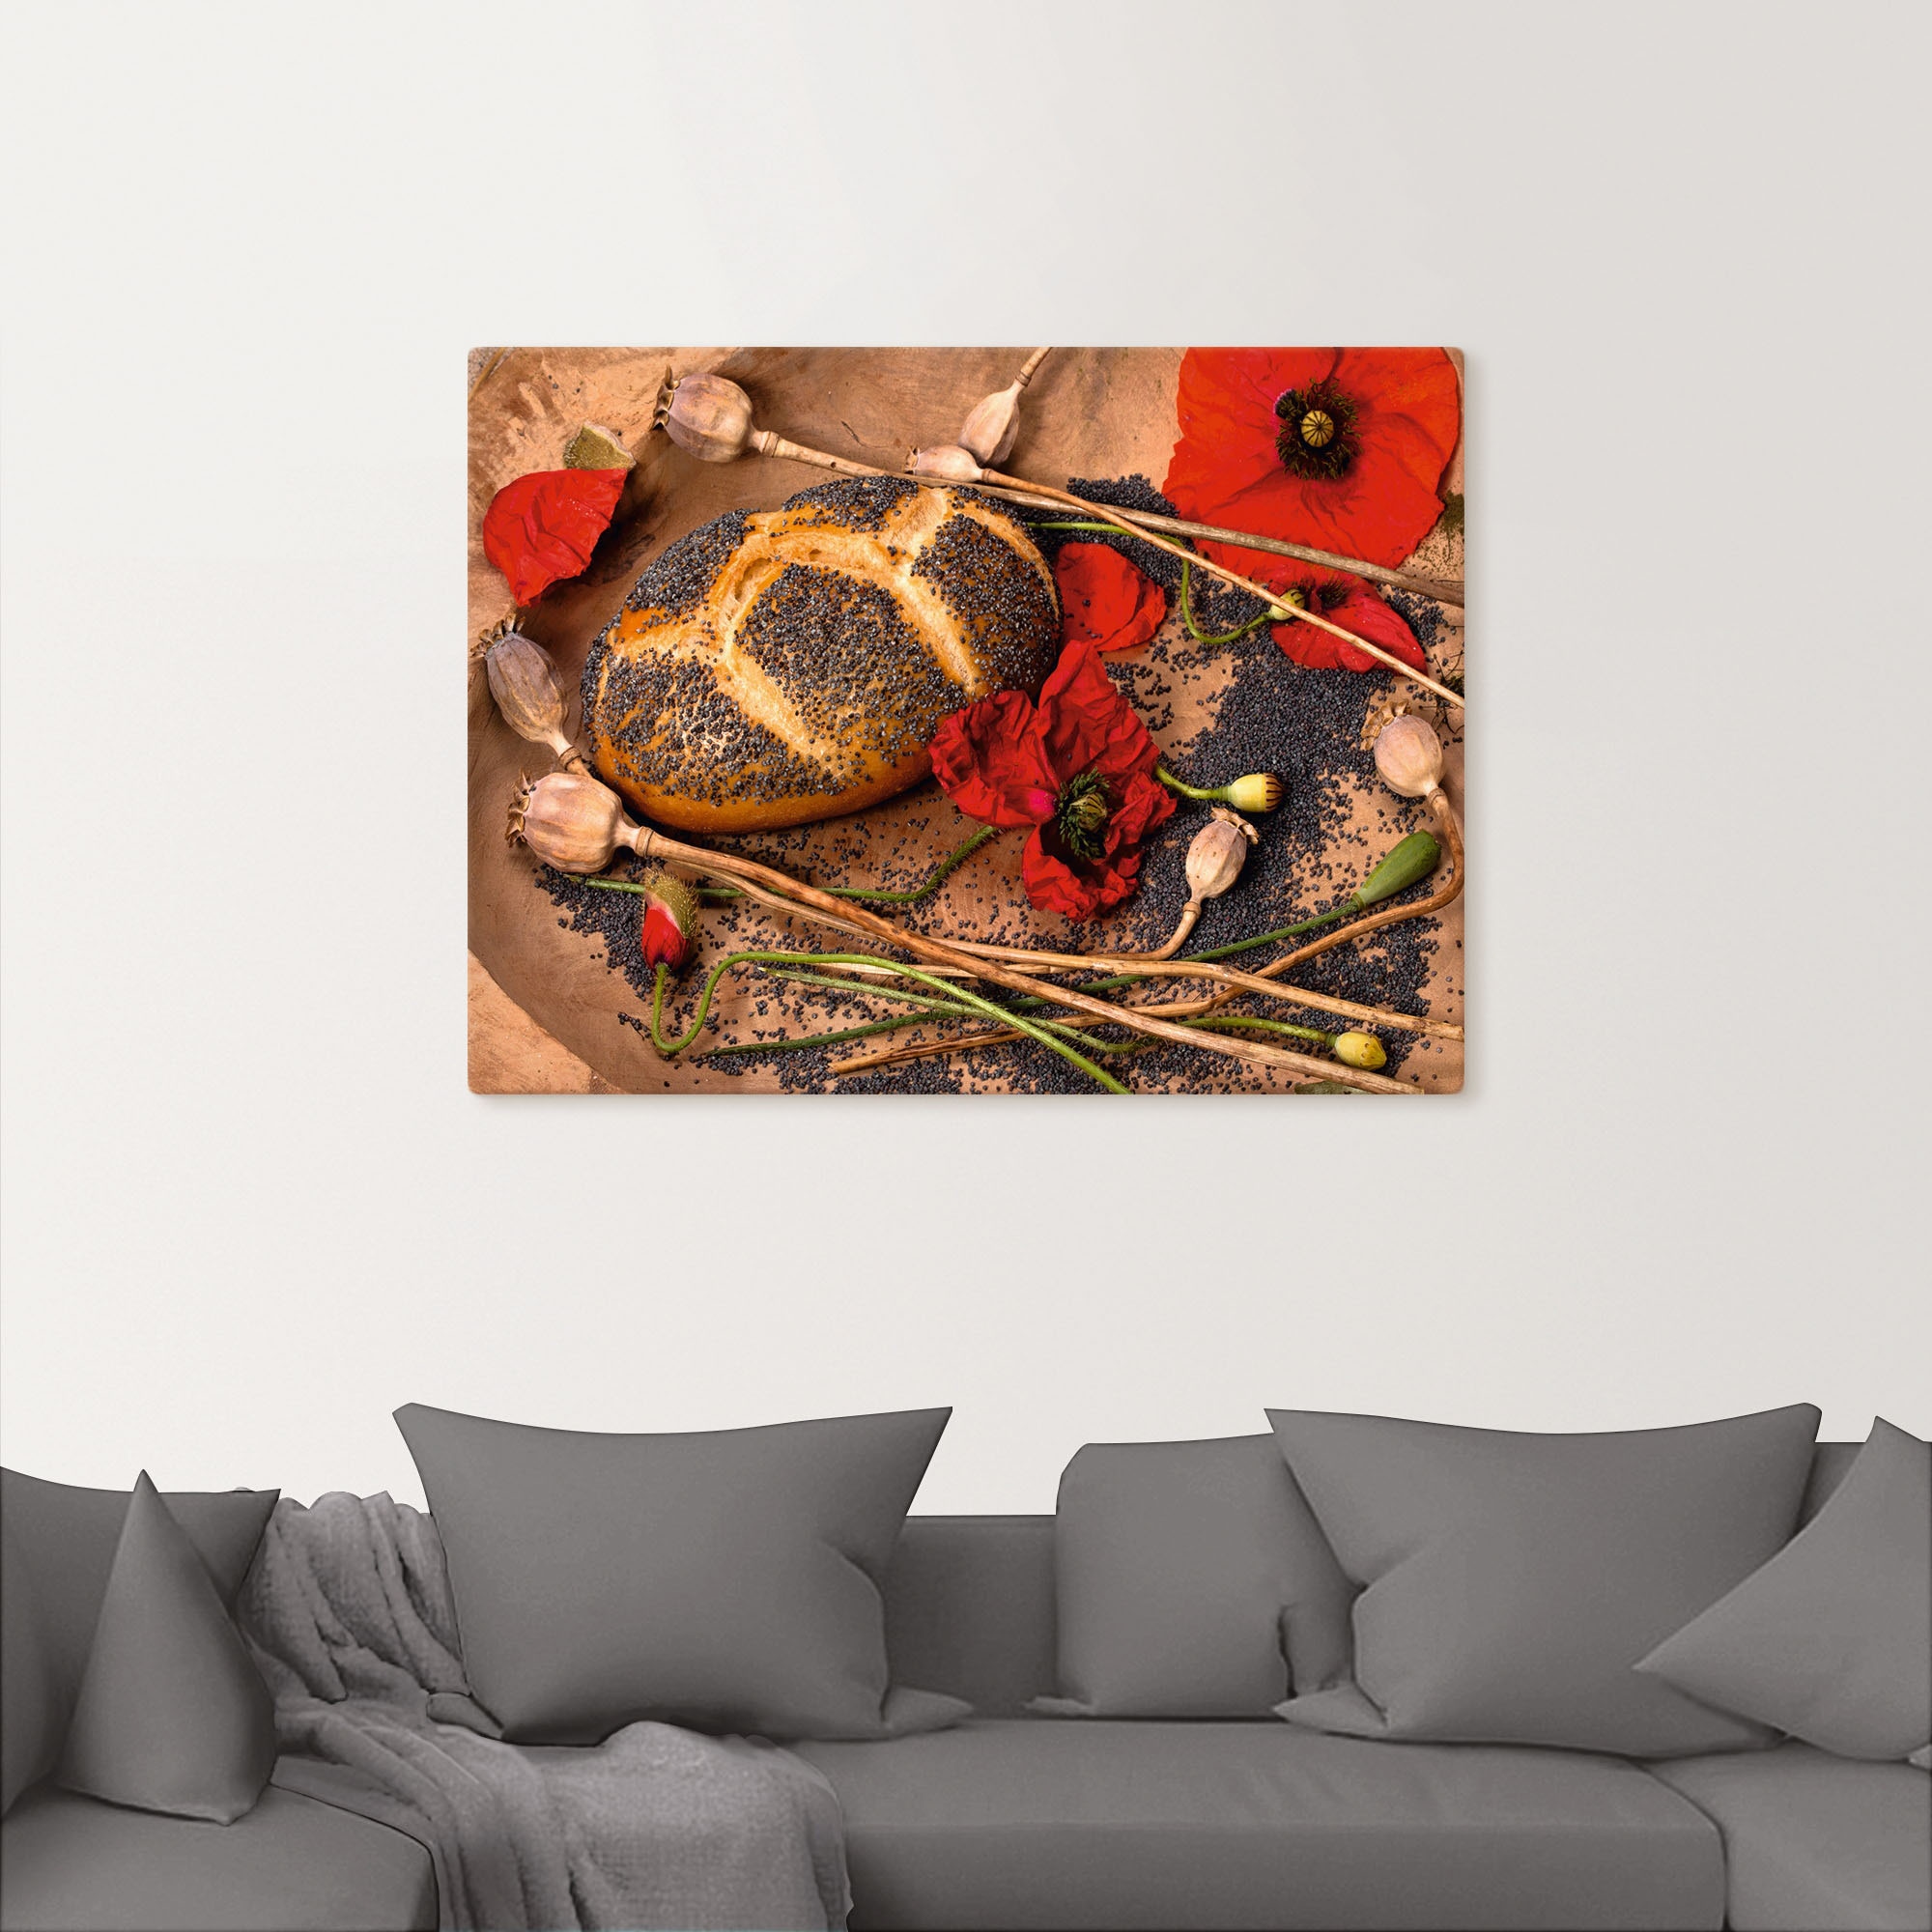 Artland Leinwandbild »Mohnbrot mit Mohnblumen dekoriert«, Getreide, (1 St.), auf Keilrahmen gespannt